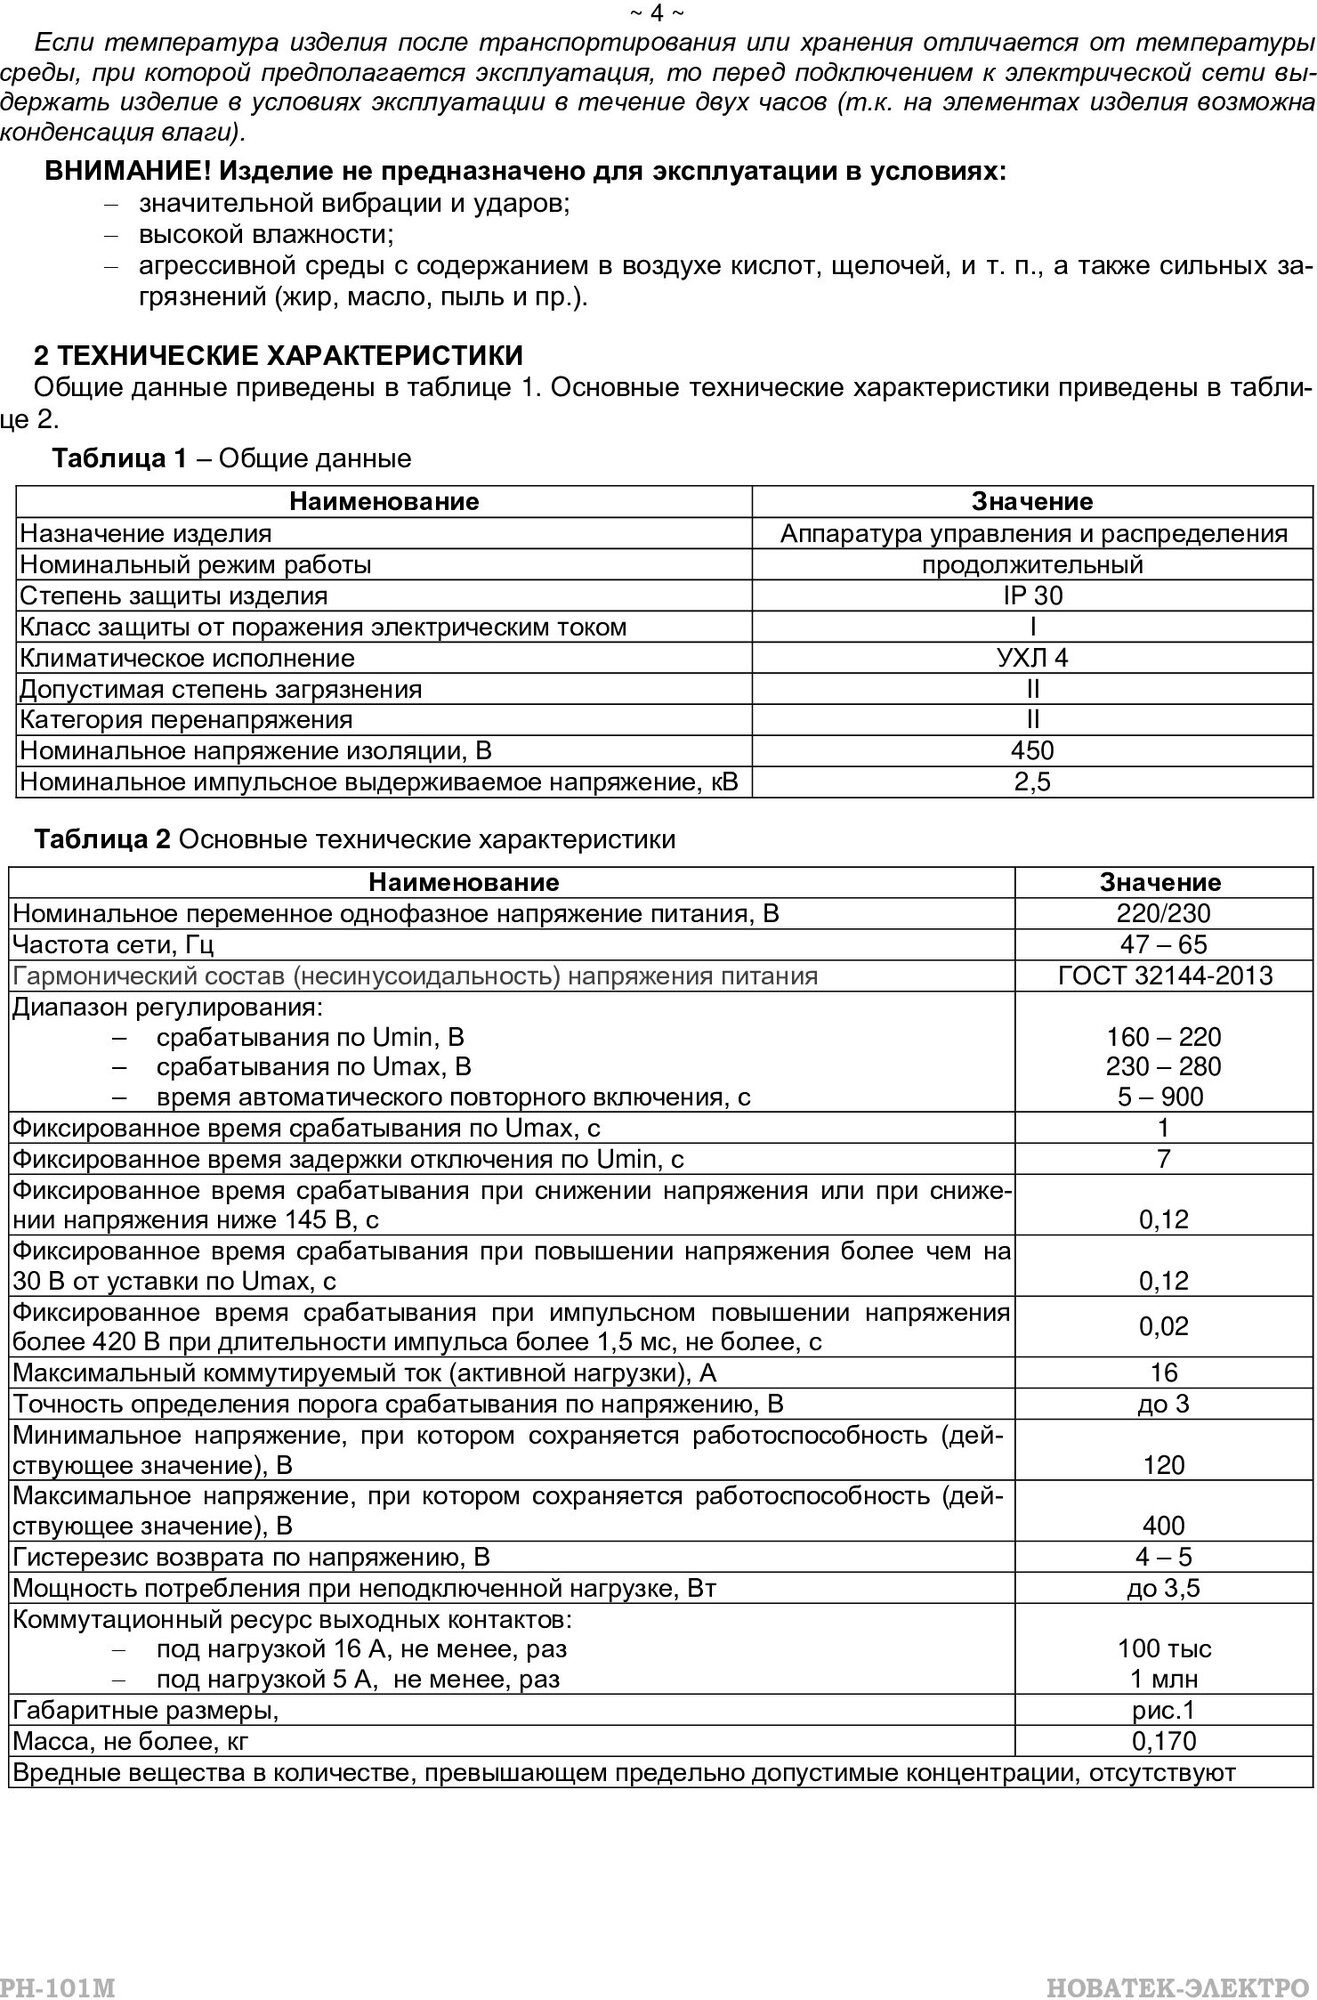 Реле контроля напряжения Новатек-Электро РН-101М